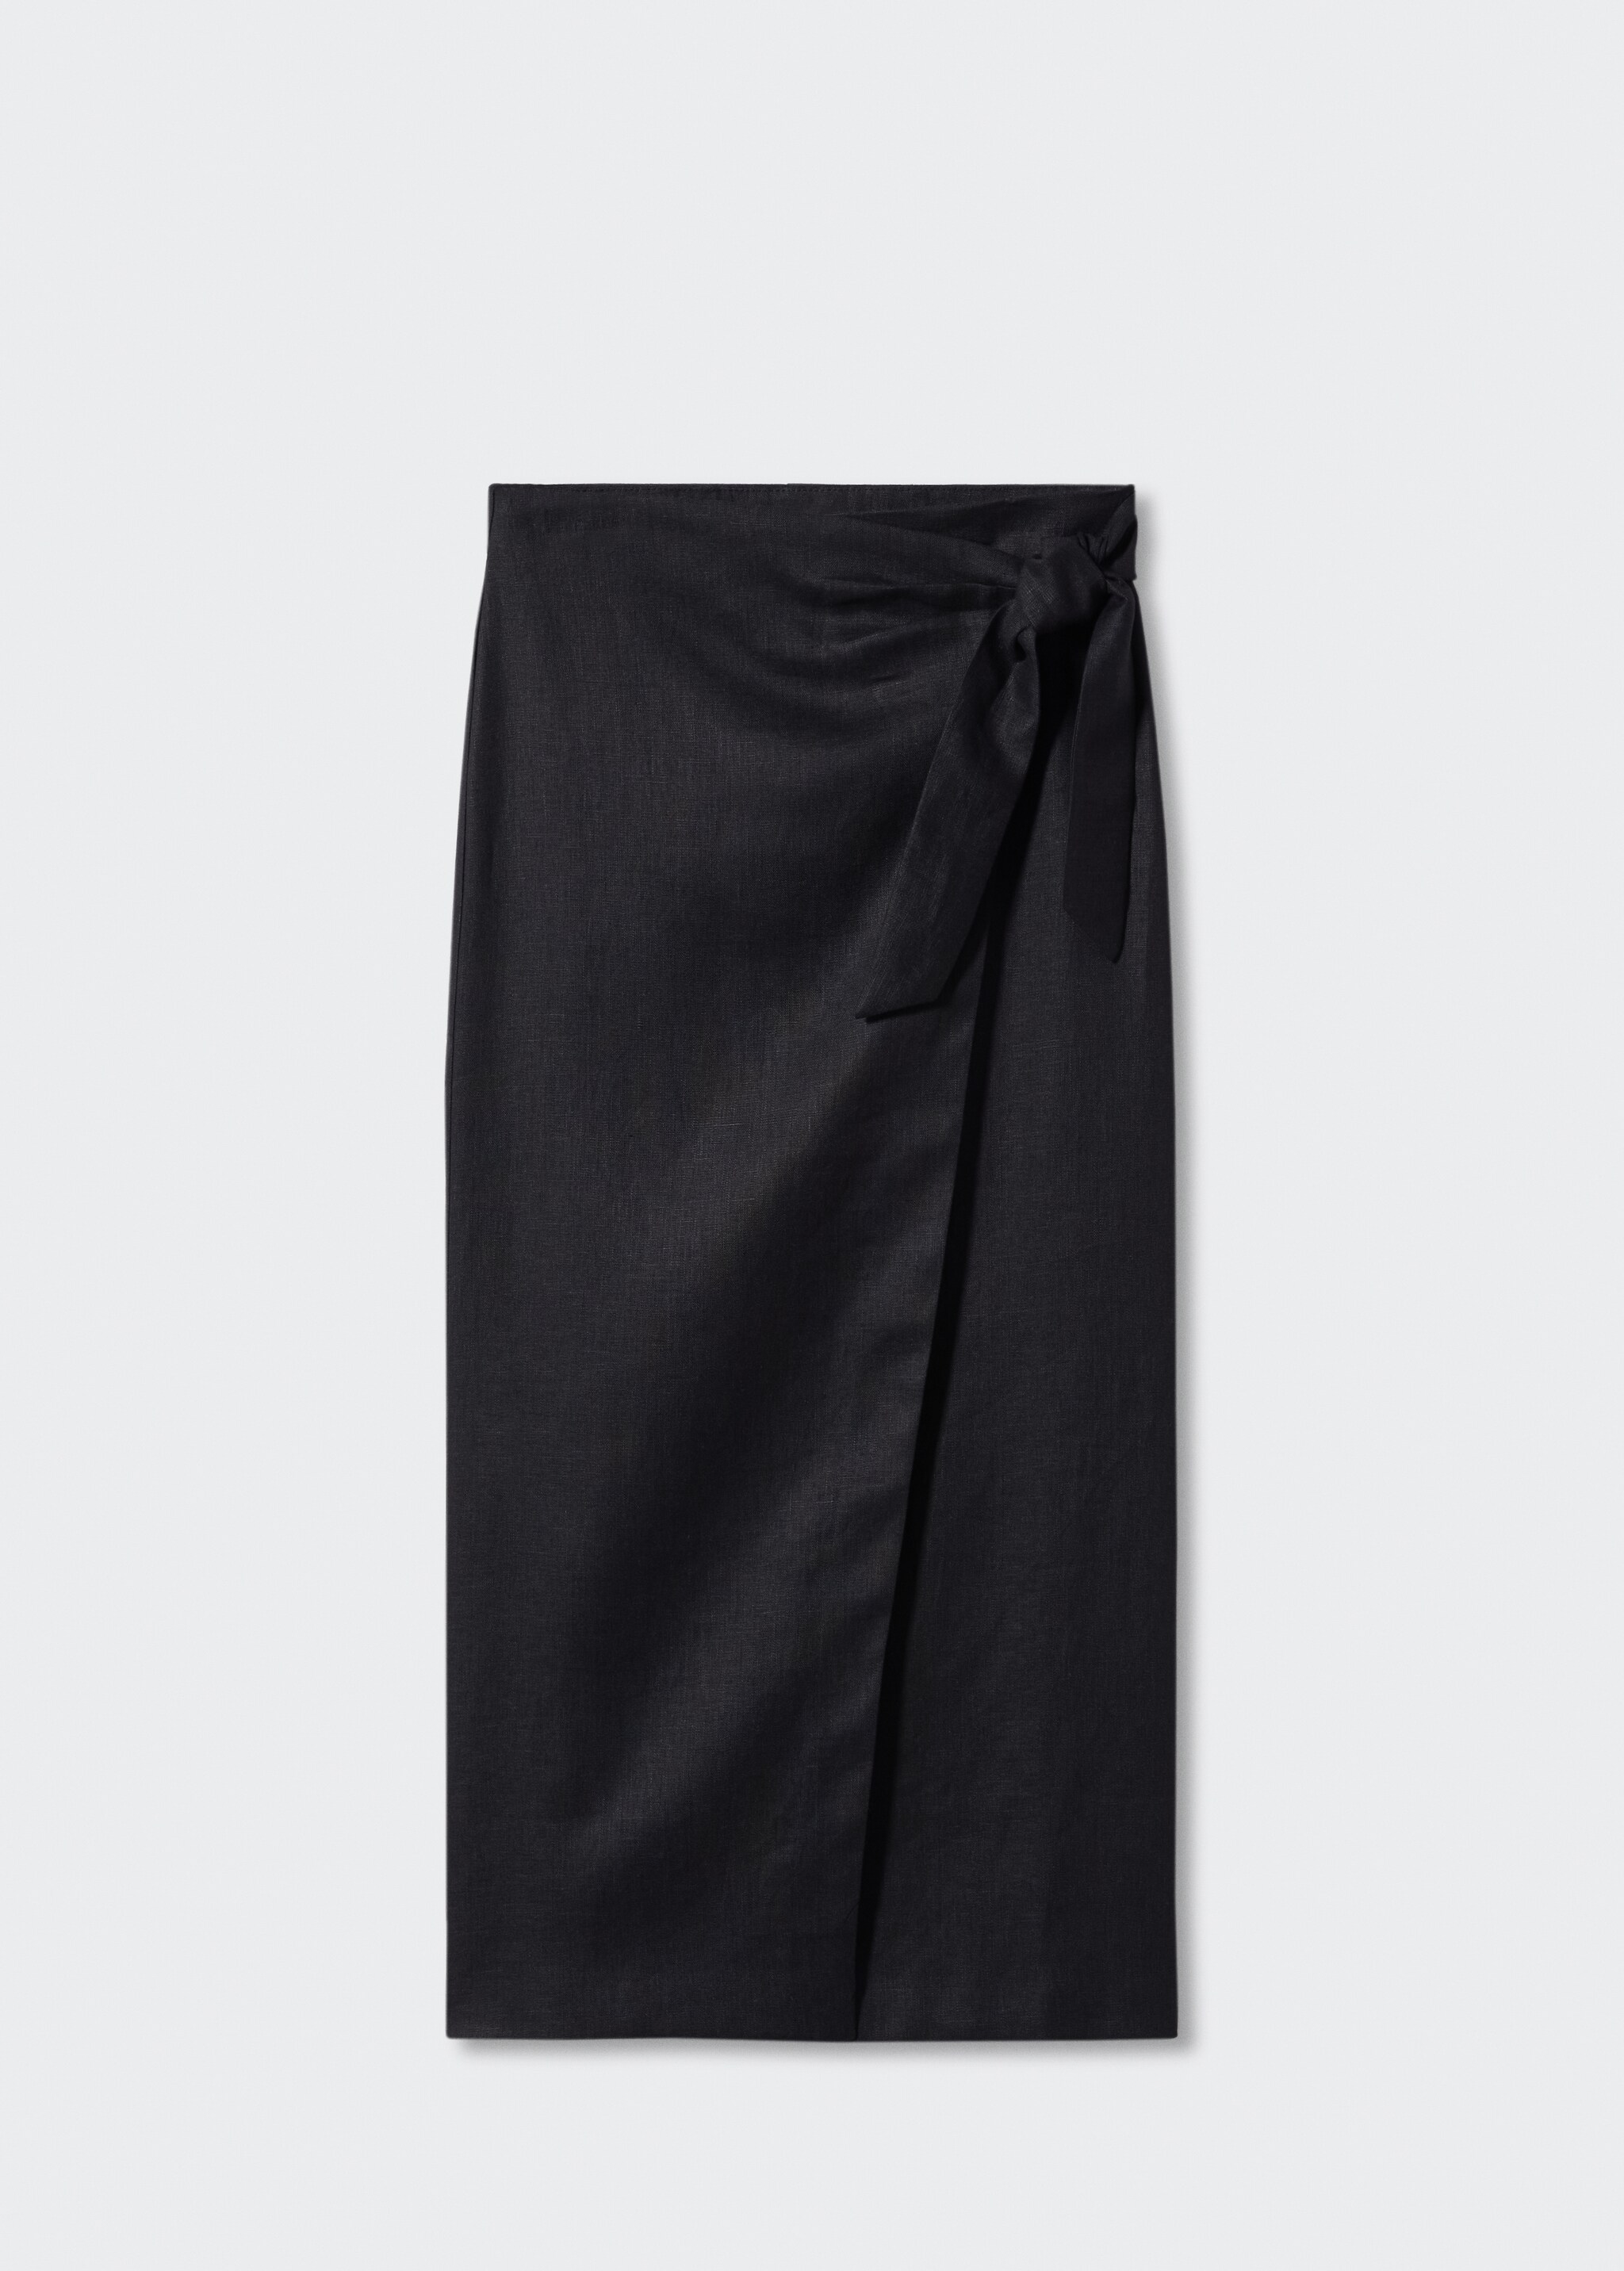 Falda cruzada lino - Artículo sin modelo